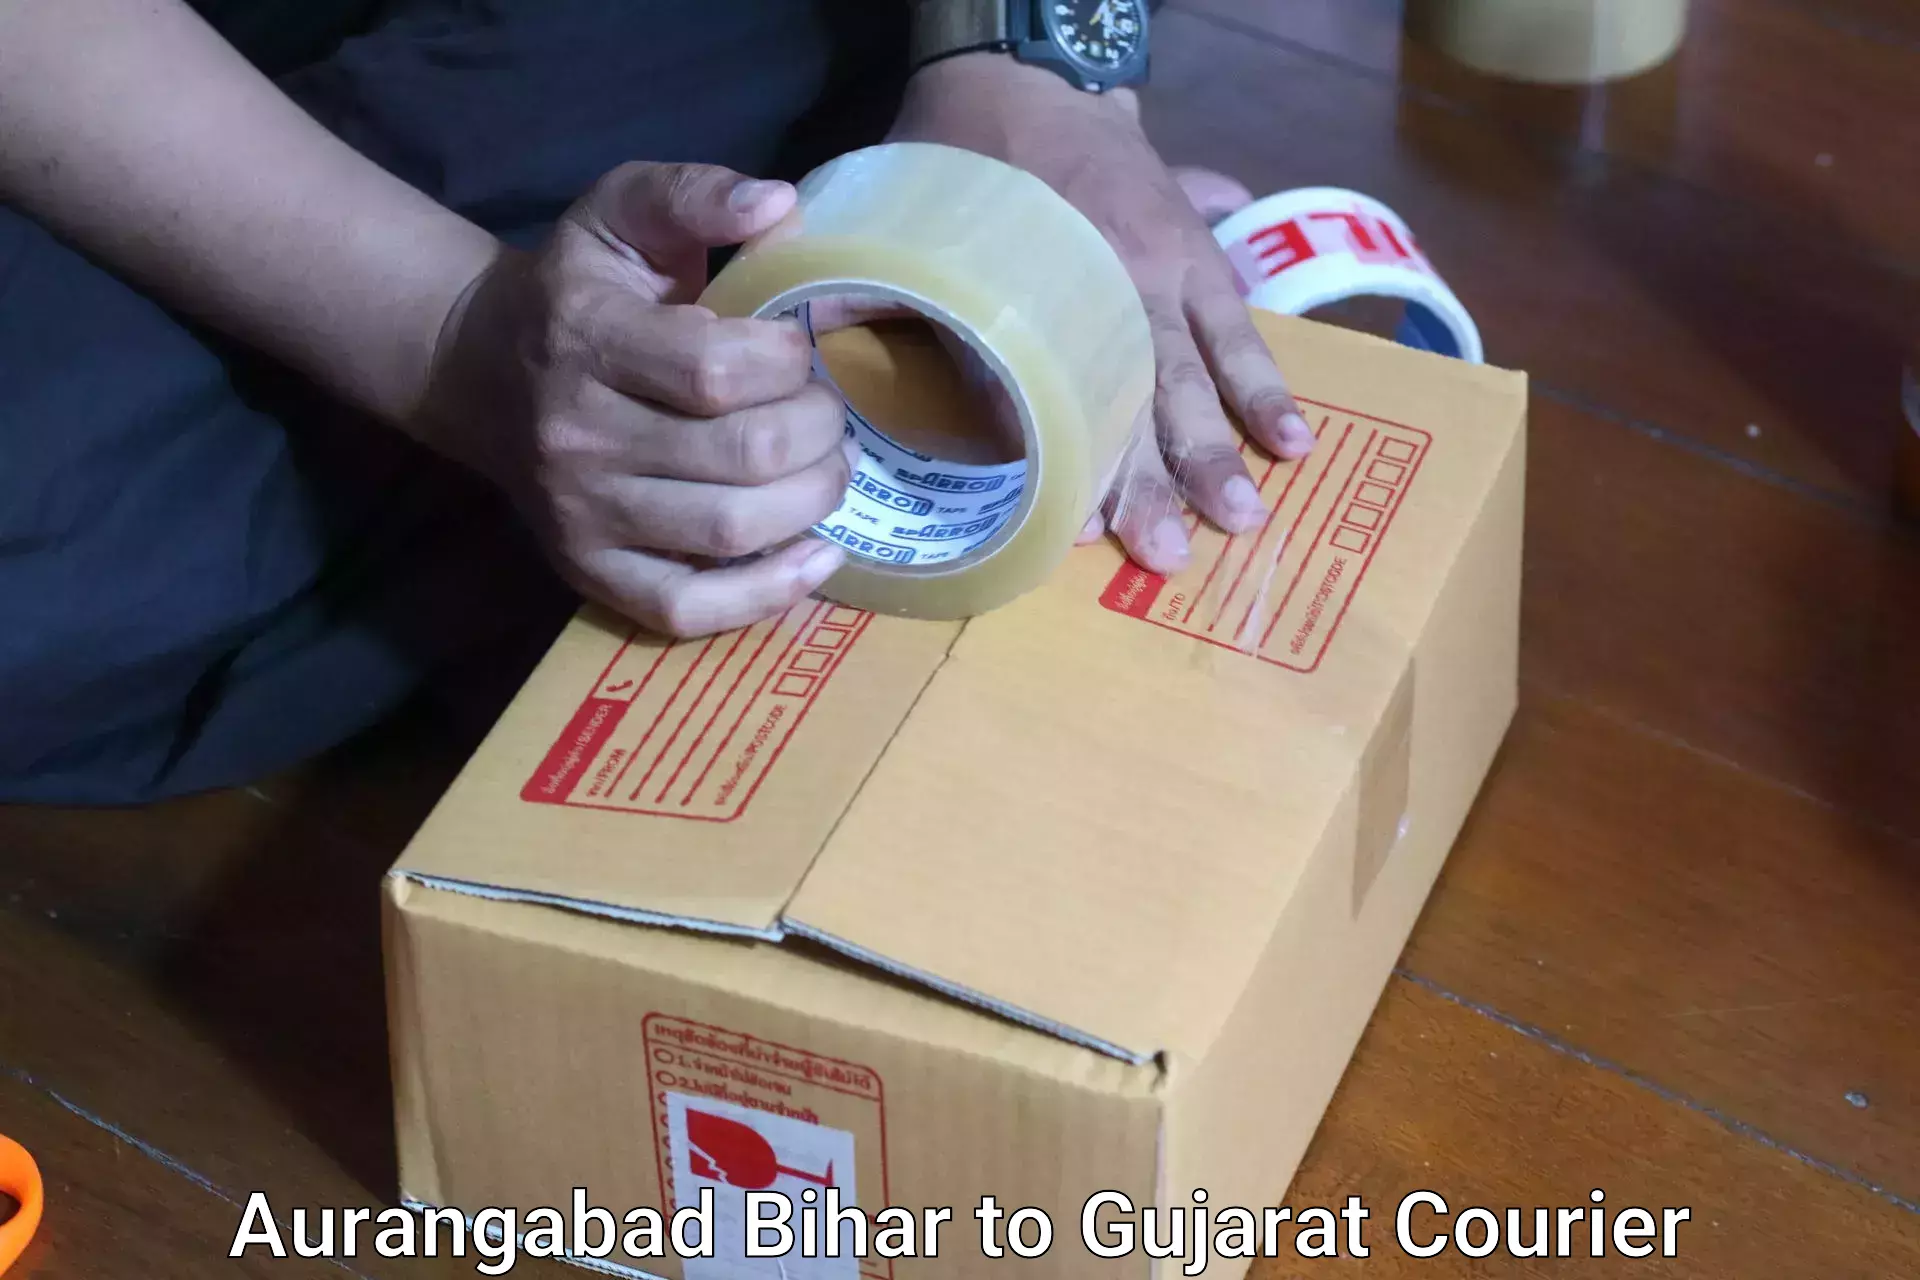 Hassle-free luggage shipping Aurangabad Bihar to IIIT Surat